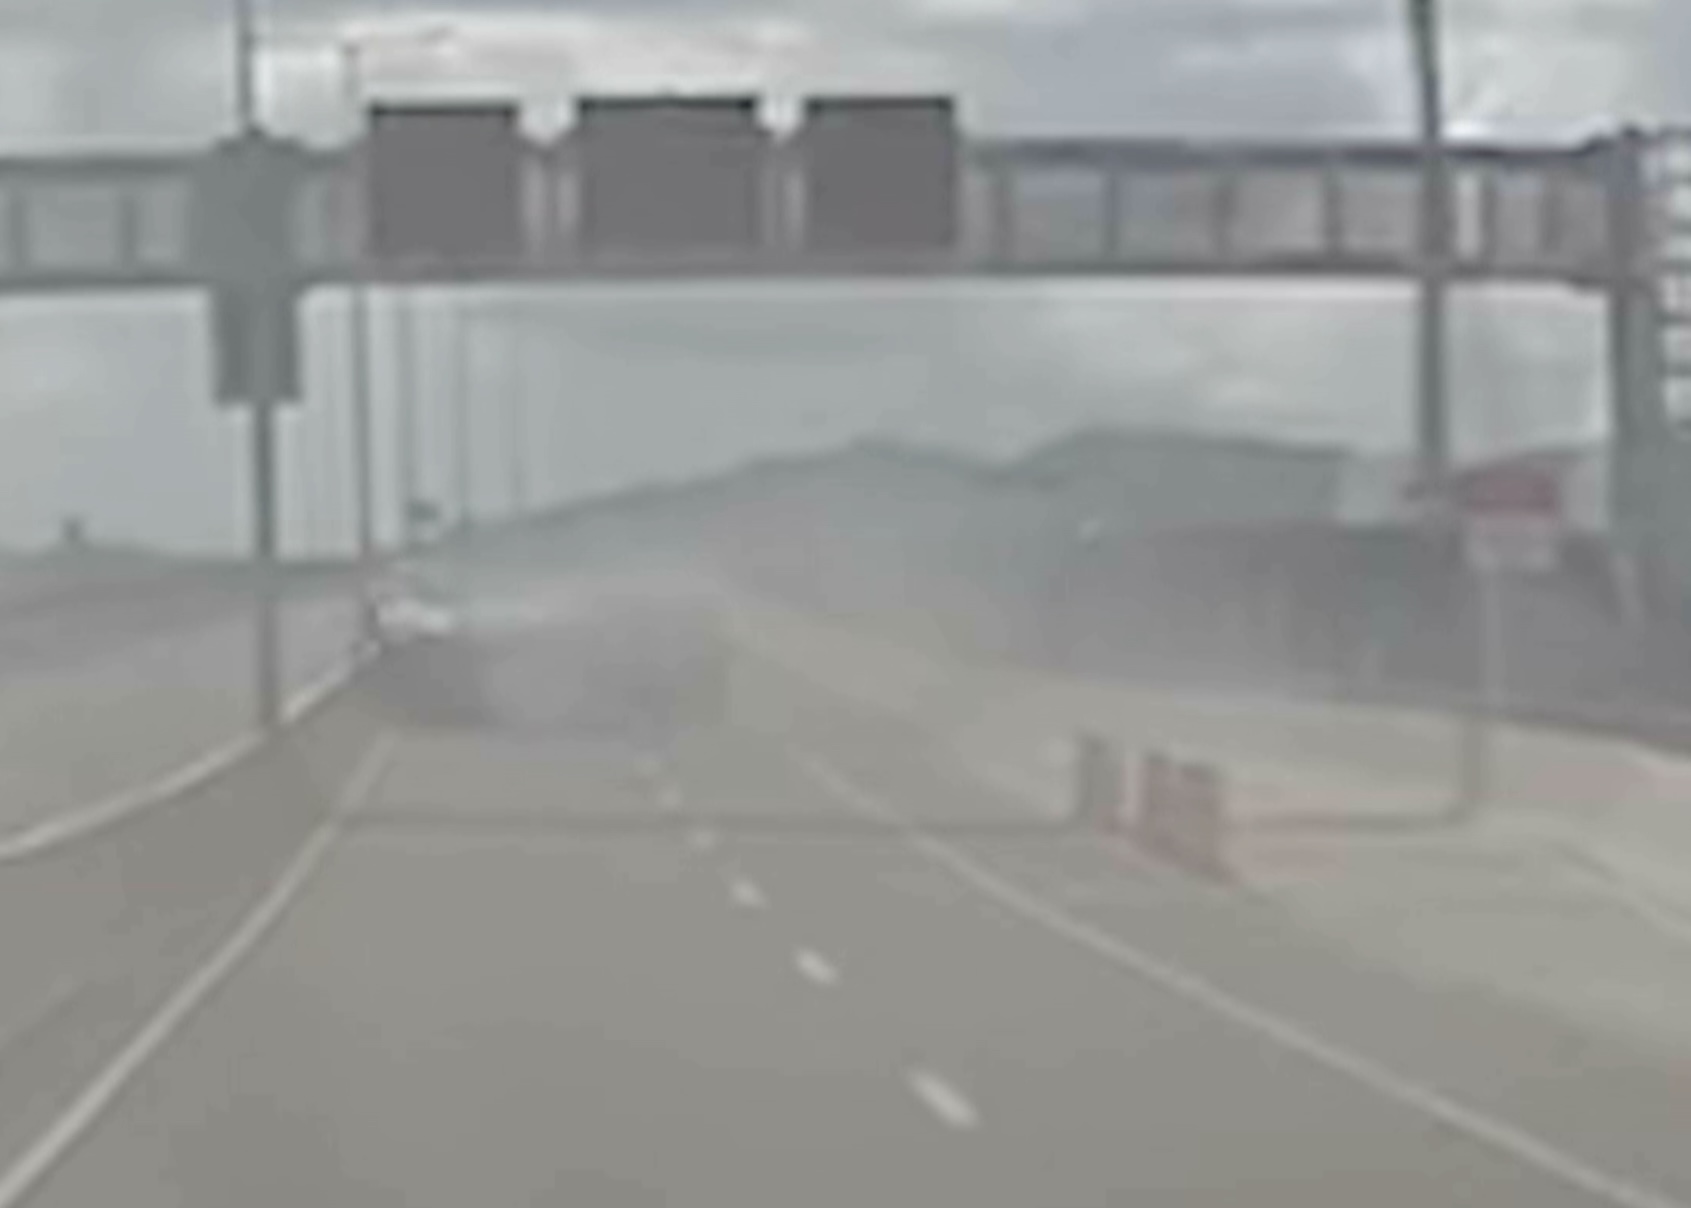 Image from Noj Mercado's dashcam video